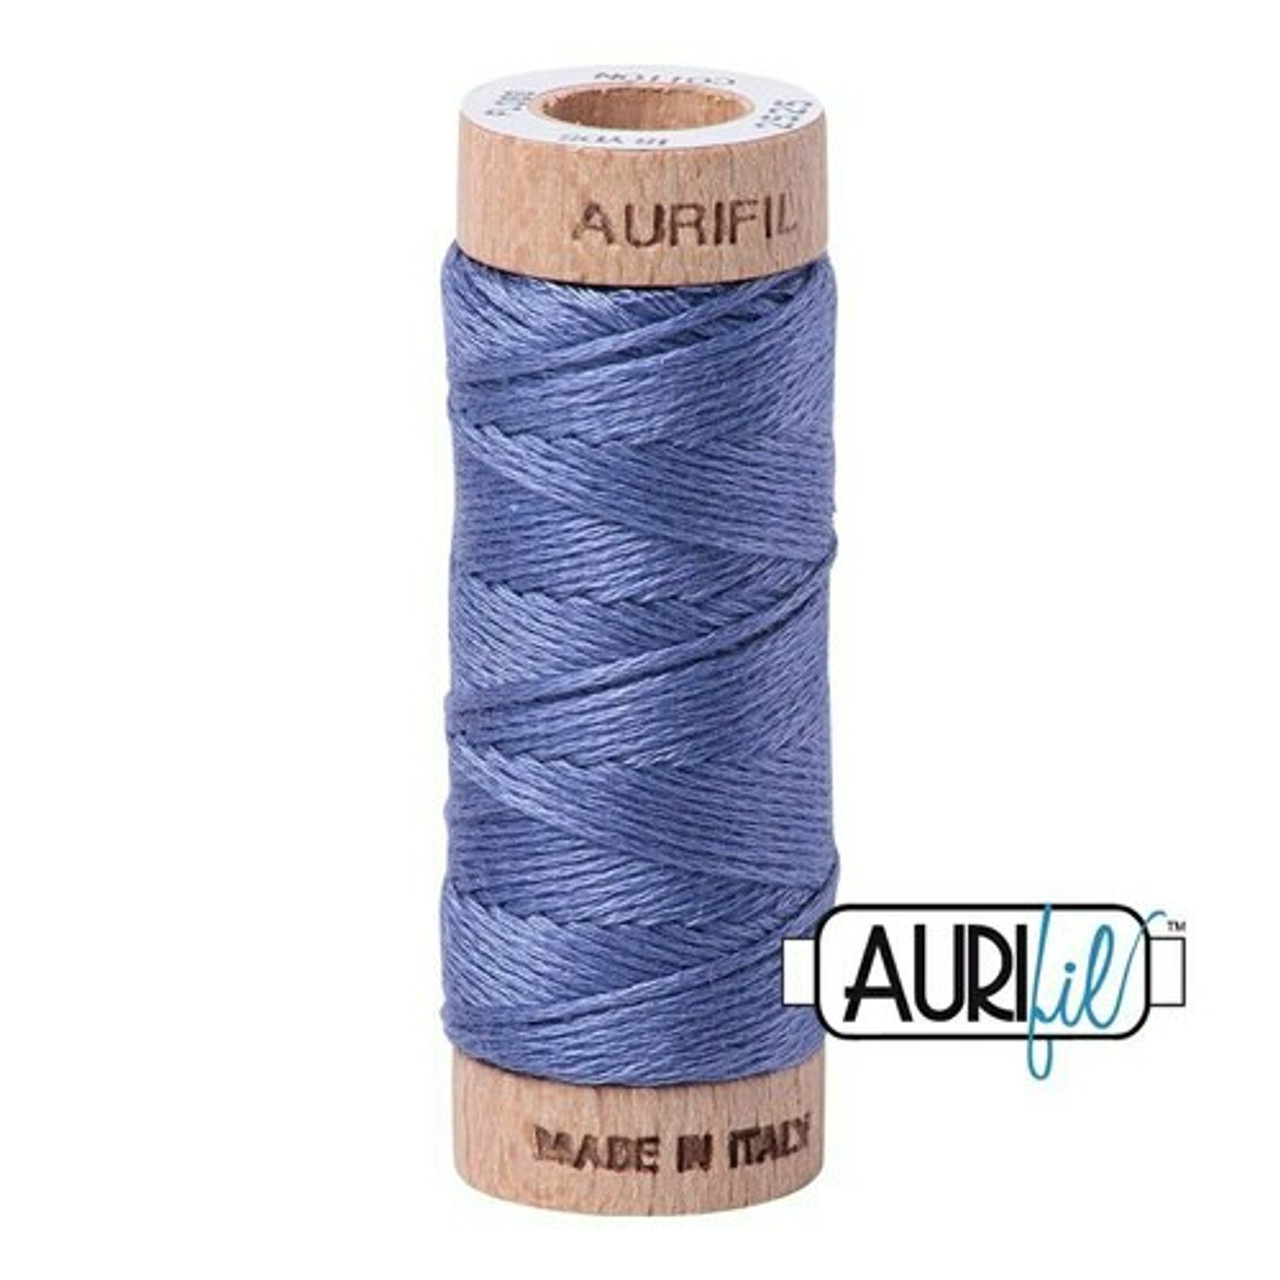 Aurifil 2525 - Dusty Blue Violet